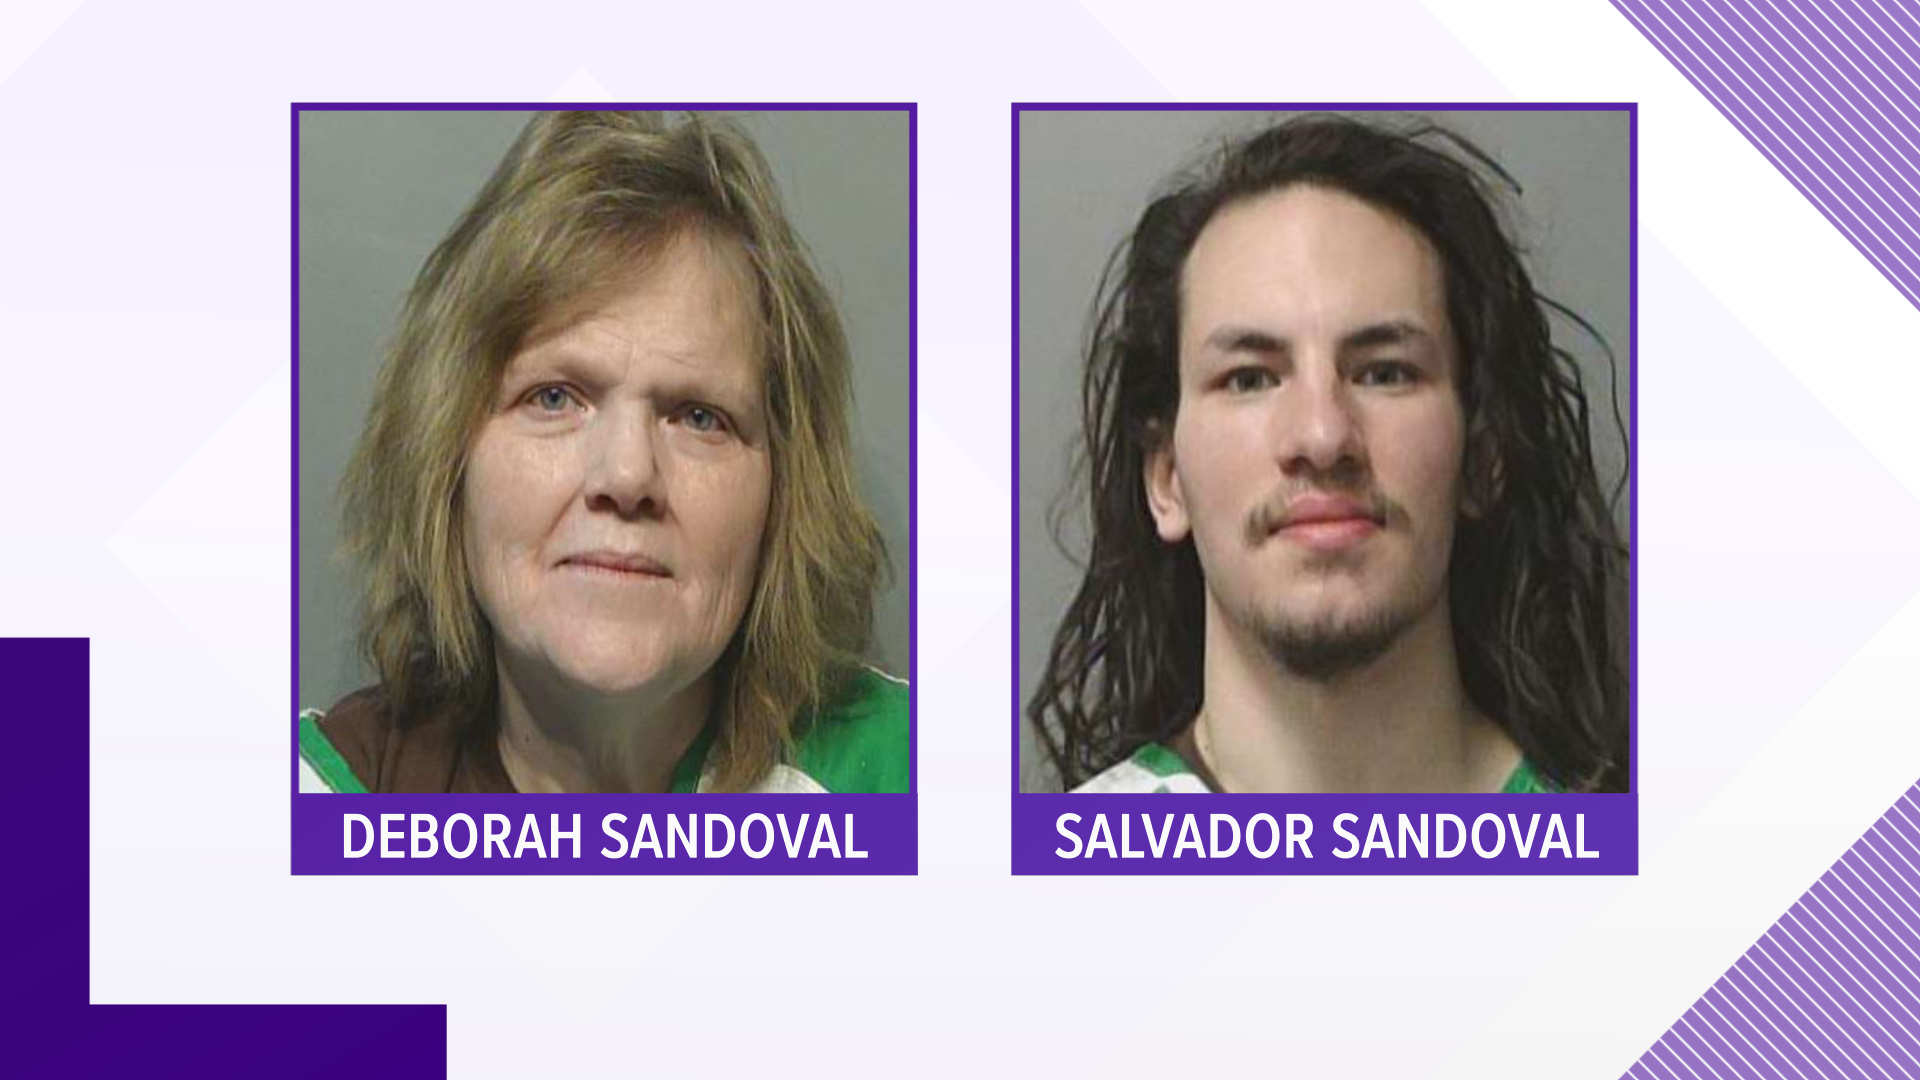 Deborah Sandoval and Salvador Sandoval Jr. were arrested on federal warrants Friday.